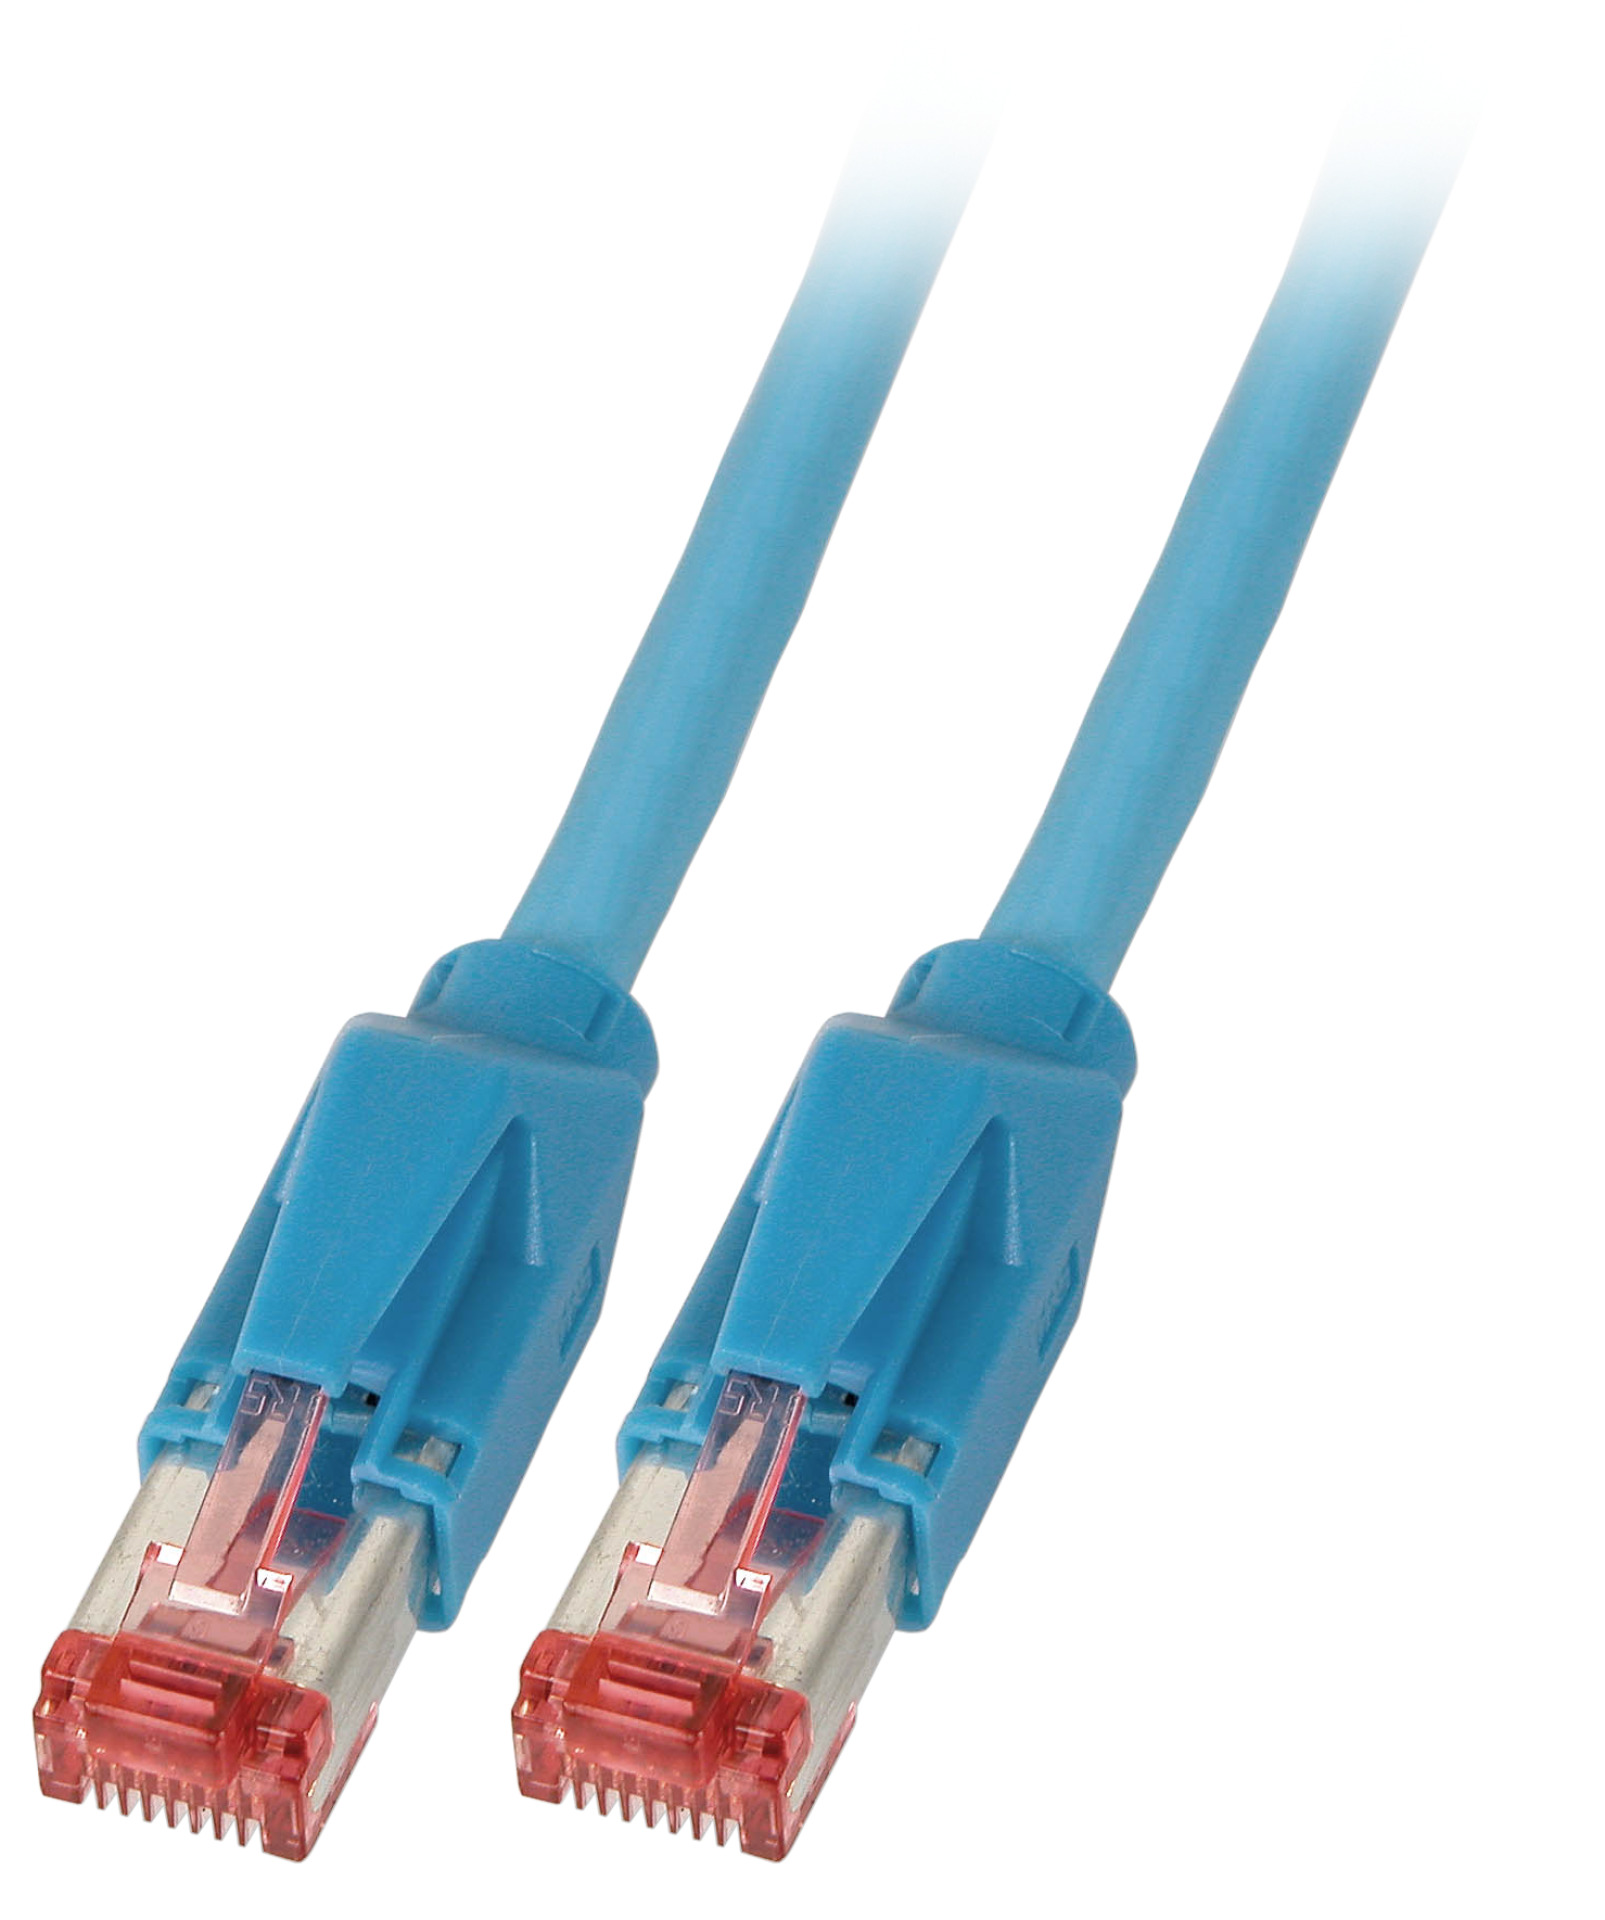 RJ45 Patch cable S/FTP, Cat.6A, TM21, Dätwyler 7702, 1m, blue